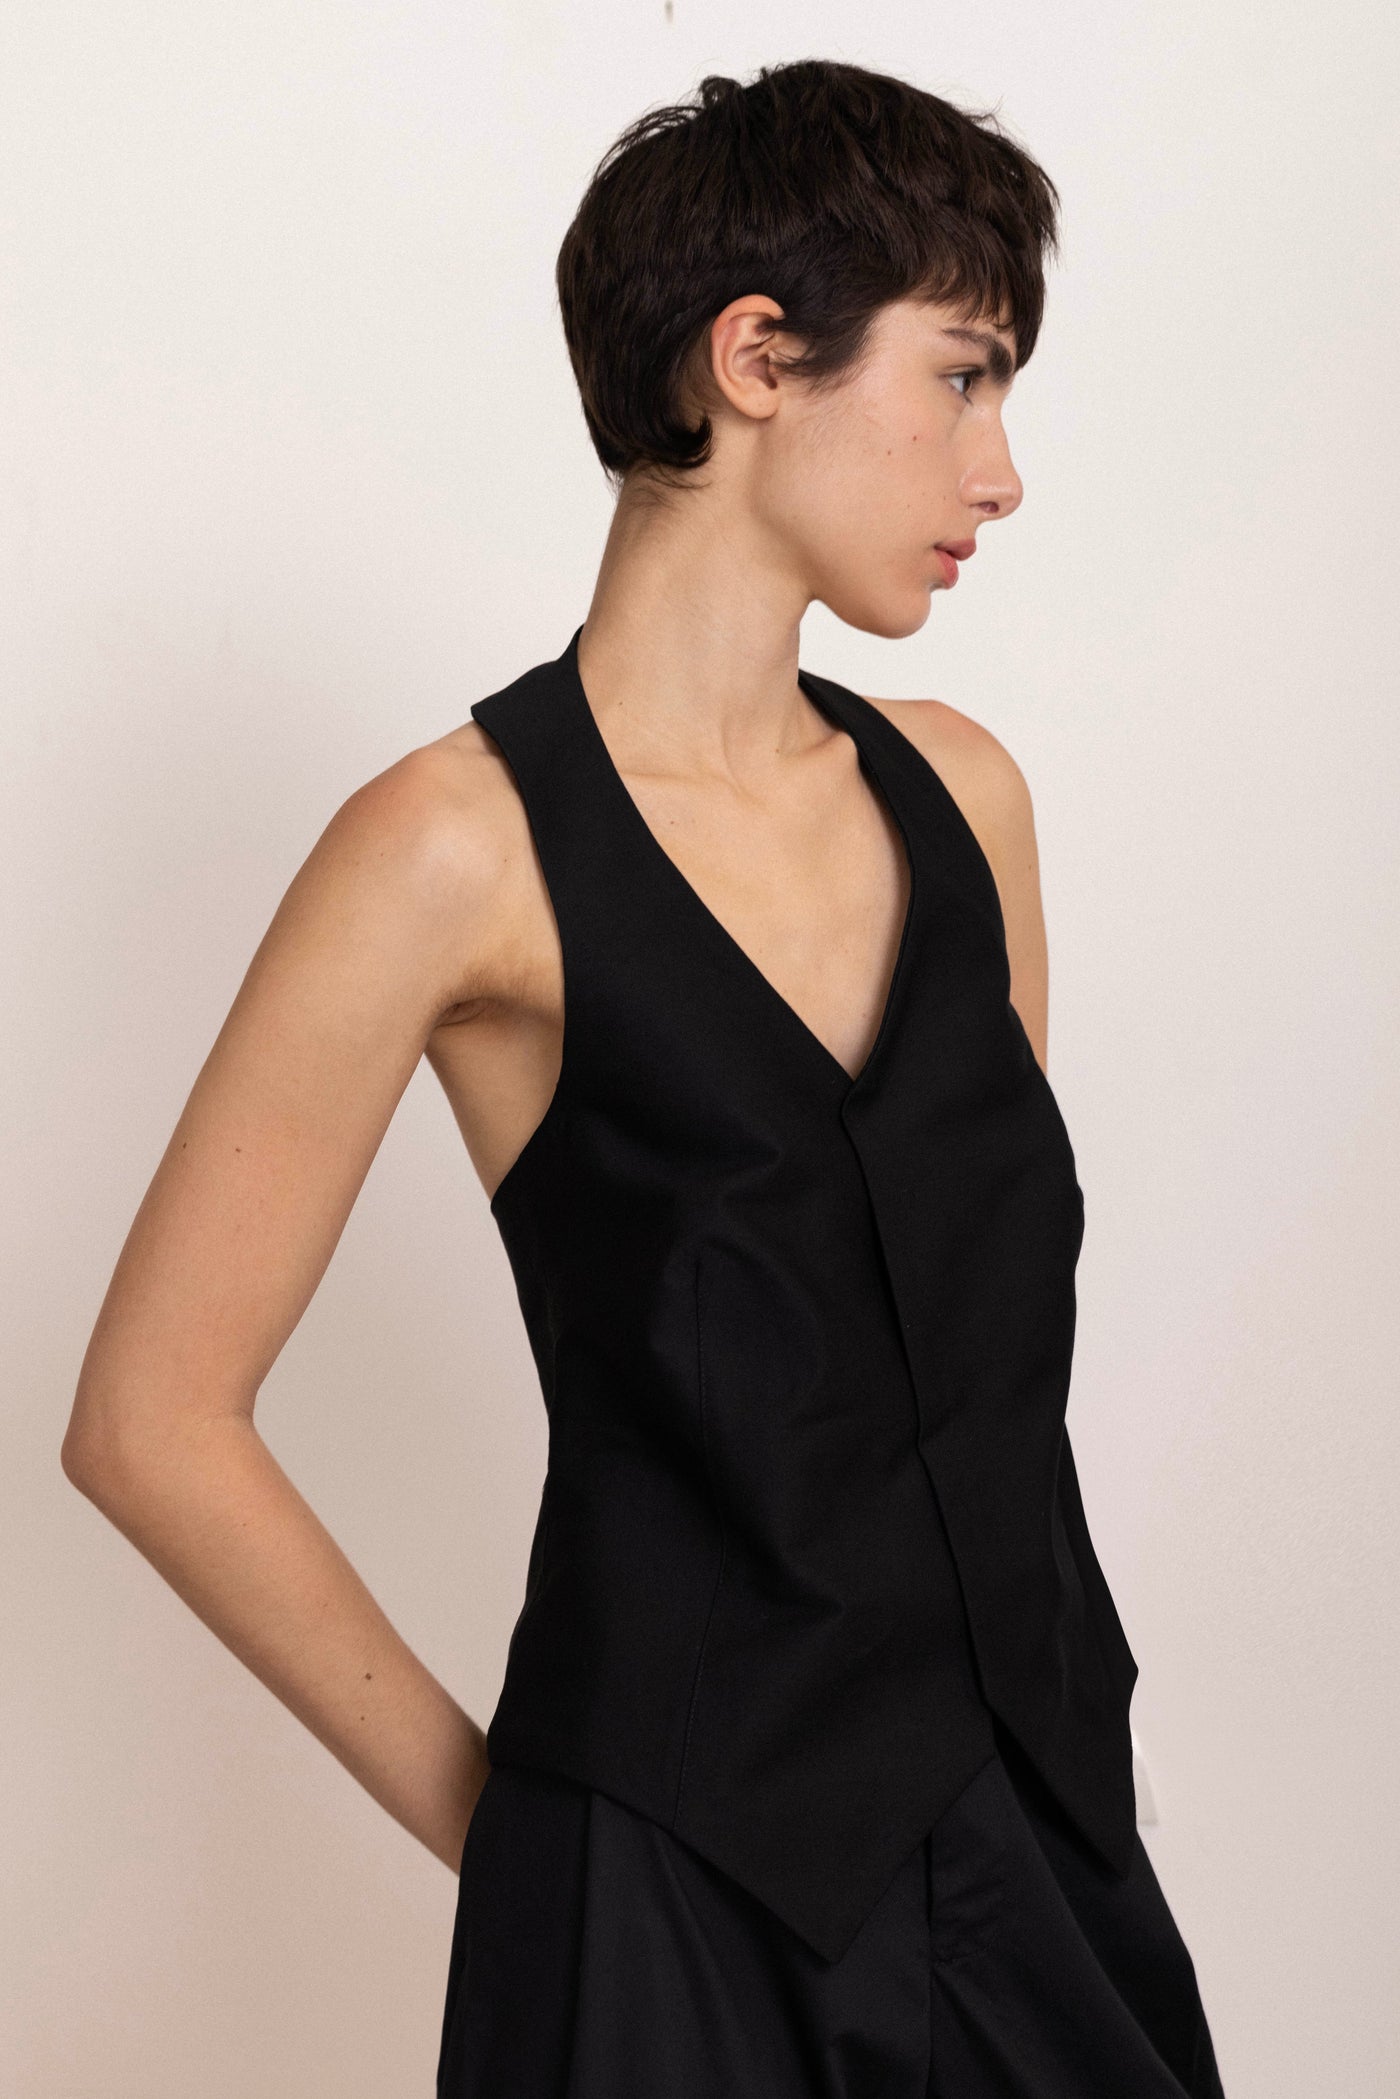 The Lauren Hutton Suit Tailored - Black